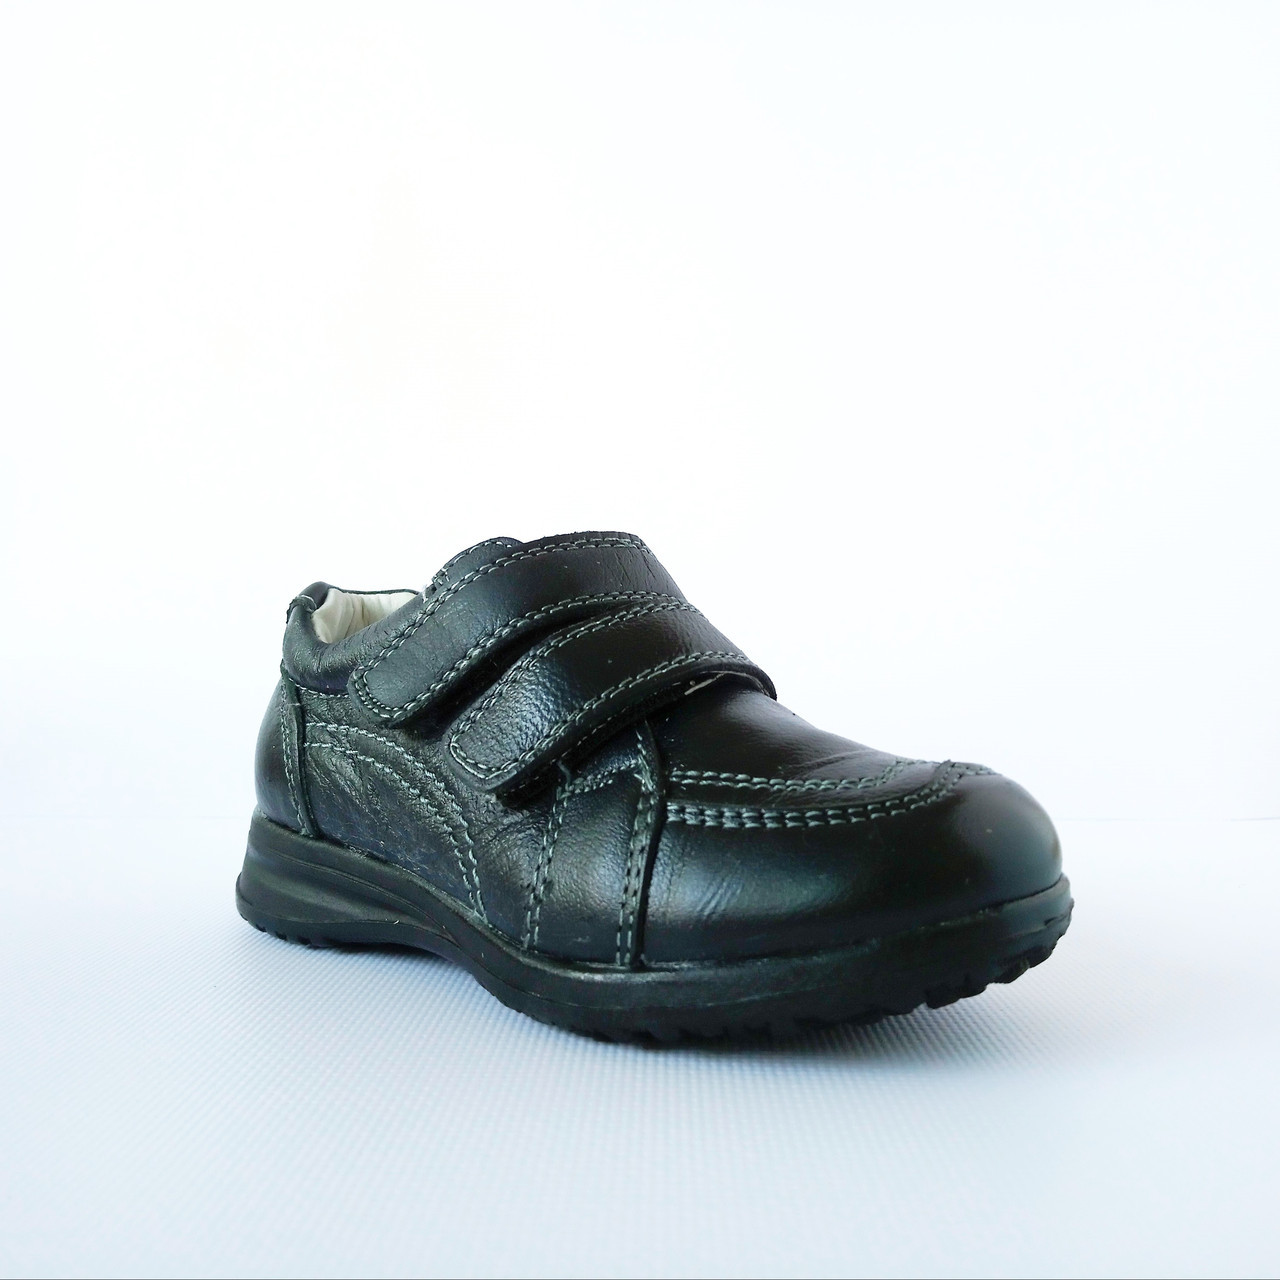 Туфли-кроссовки из натуральной кожи мальчикам,  р. 26, 27, 28. Черные,